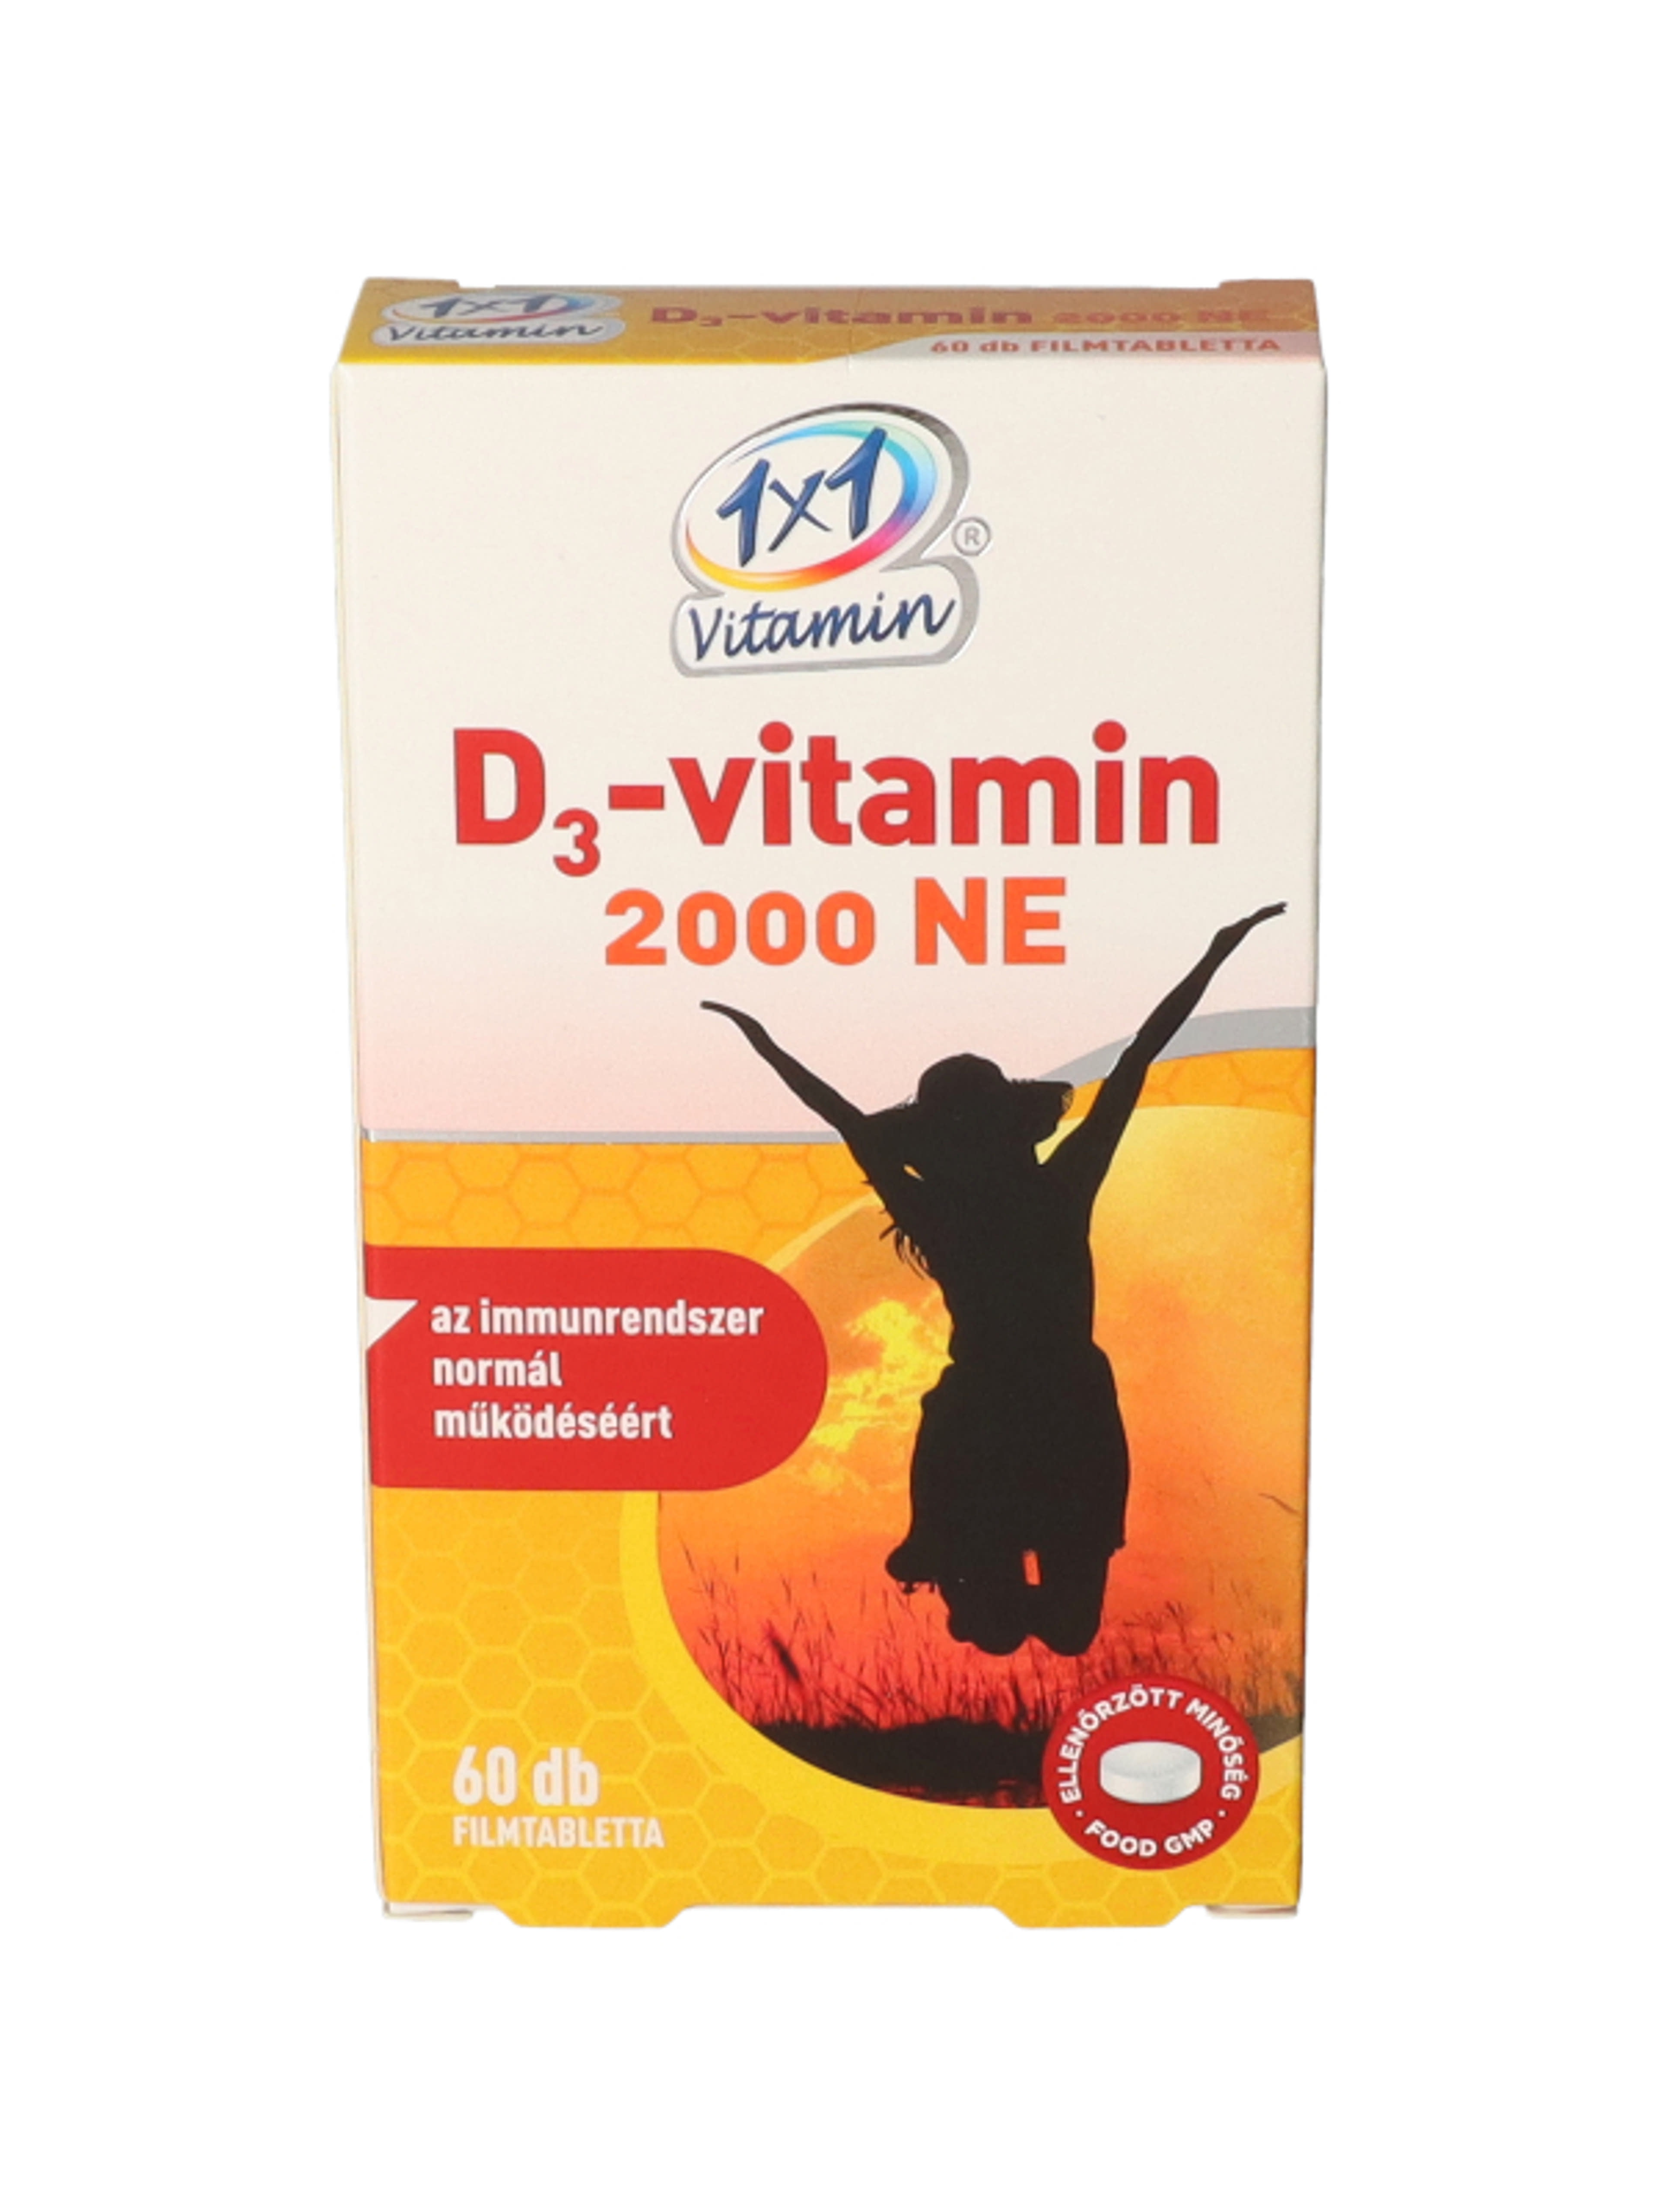 1x1 vitamin D3 2000Ne - 60 db